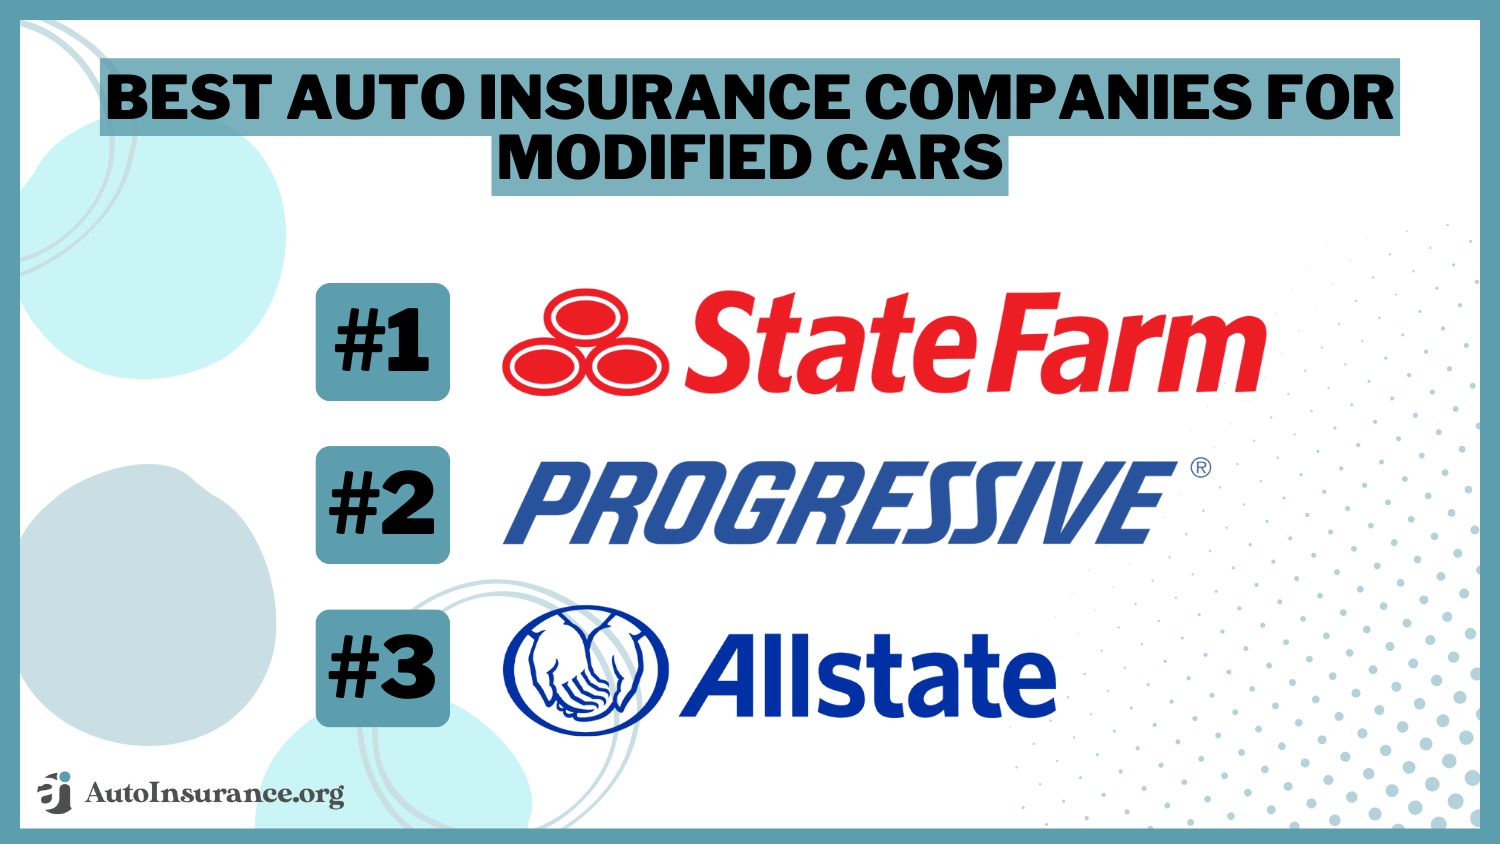 Best Auto Insurance Companies for Modified Cars: State Farm, Progressive, Allstate